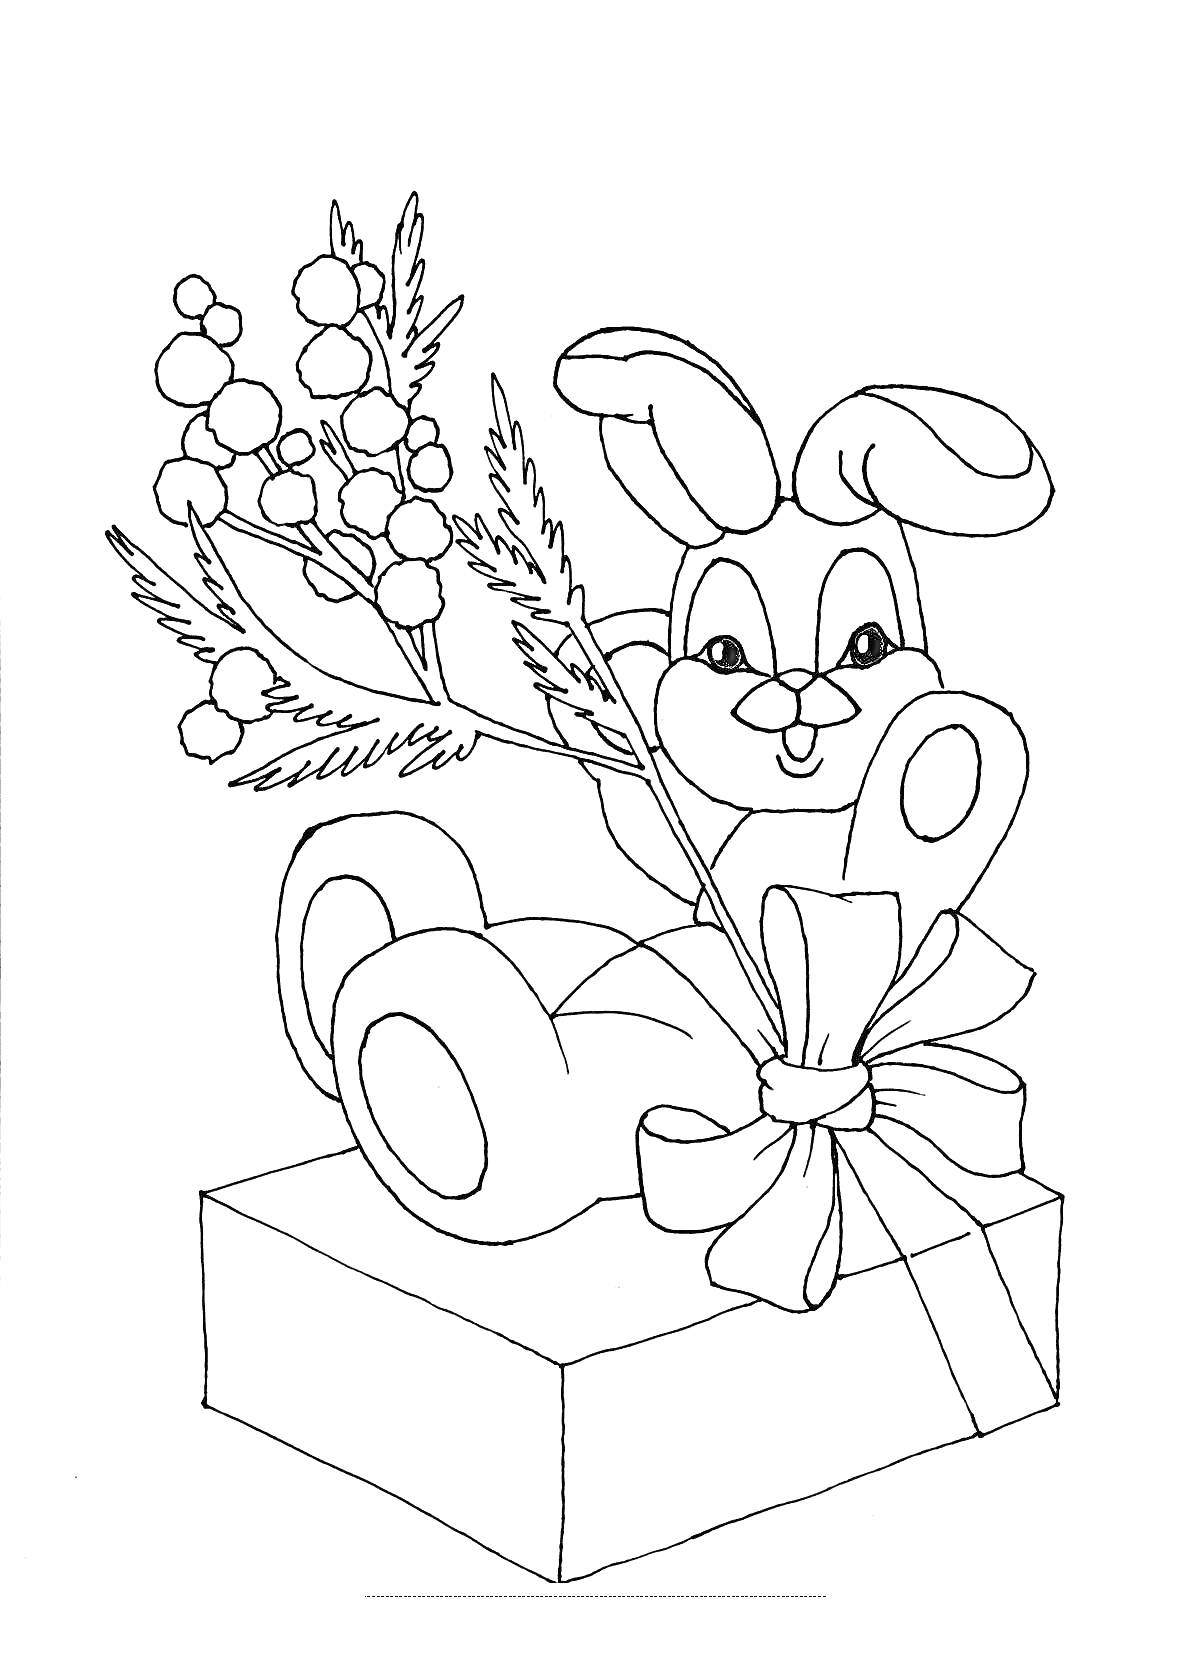 Раскраска Кролик с букетом и подарочной коробкой